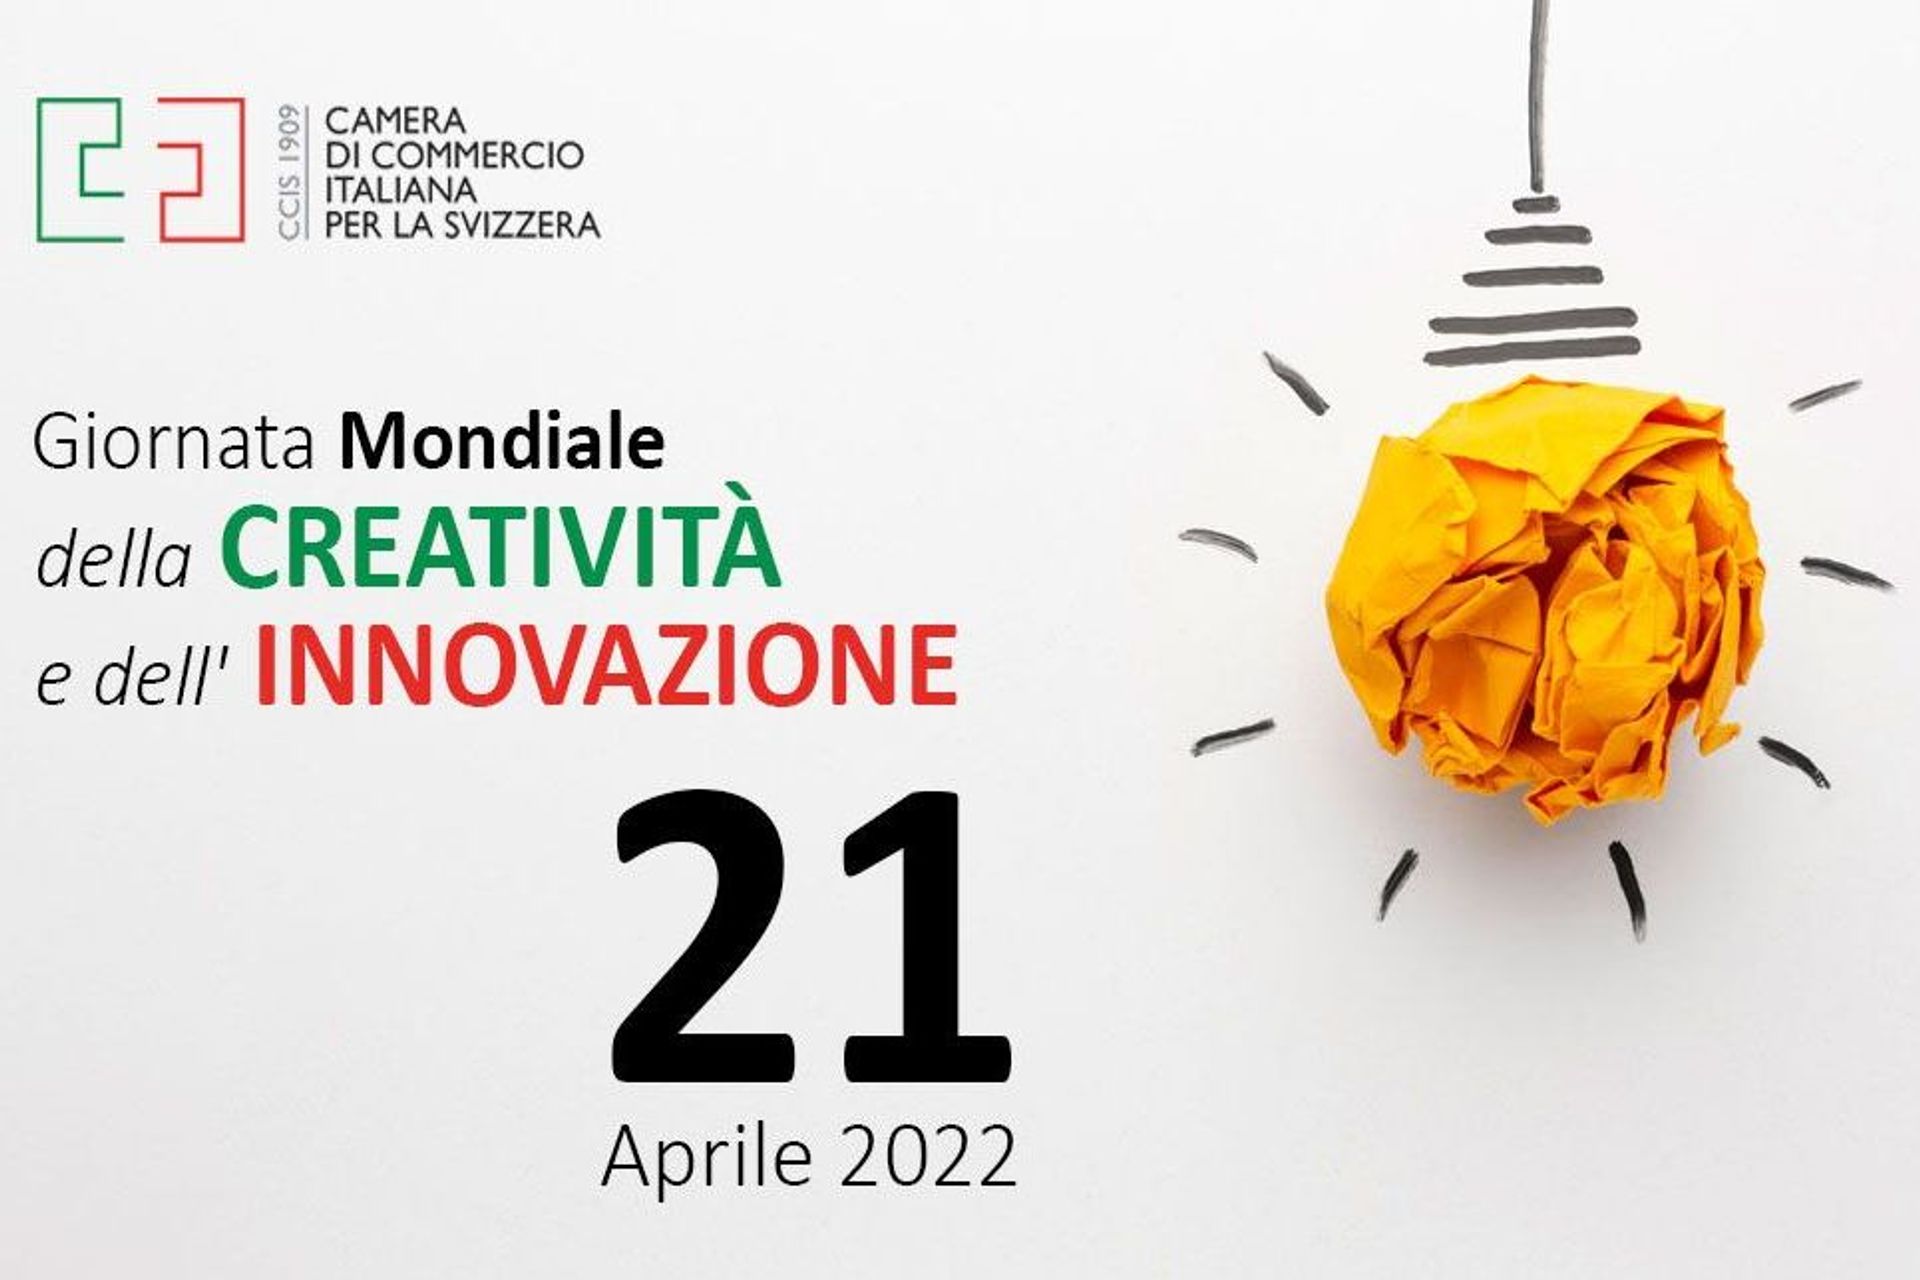 L'immagine di introduzione del video della Giornata della Creatività e dell'Innovazione realizzato dalla Camera di Commercio Italiana per la Svizzera